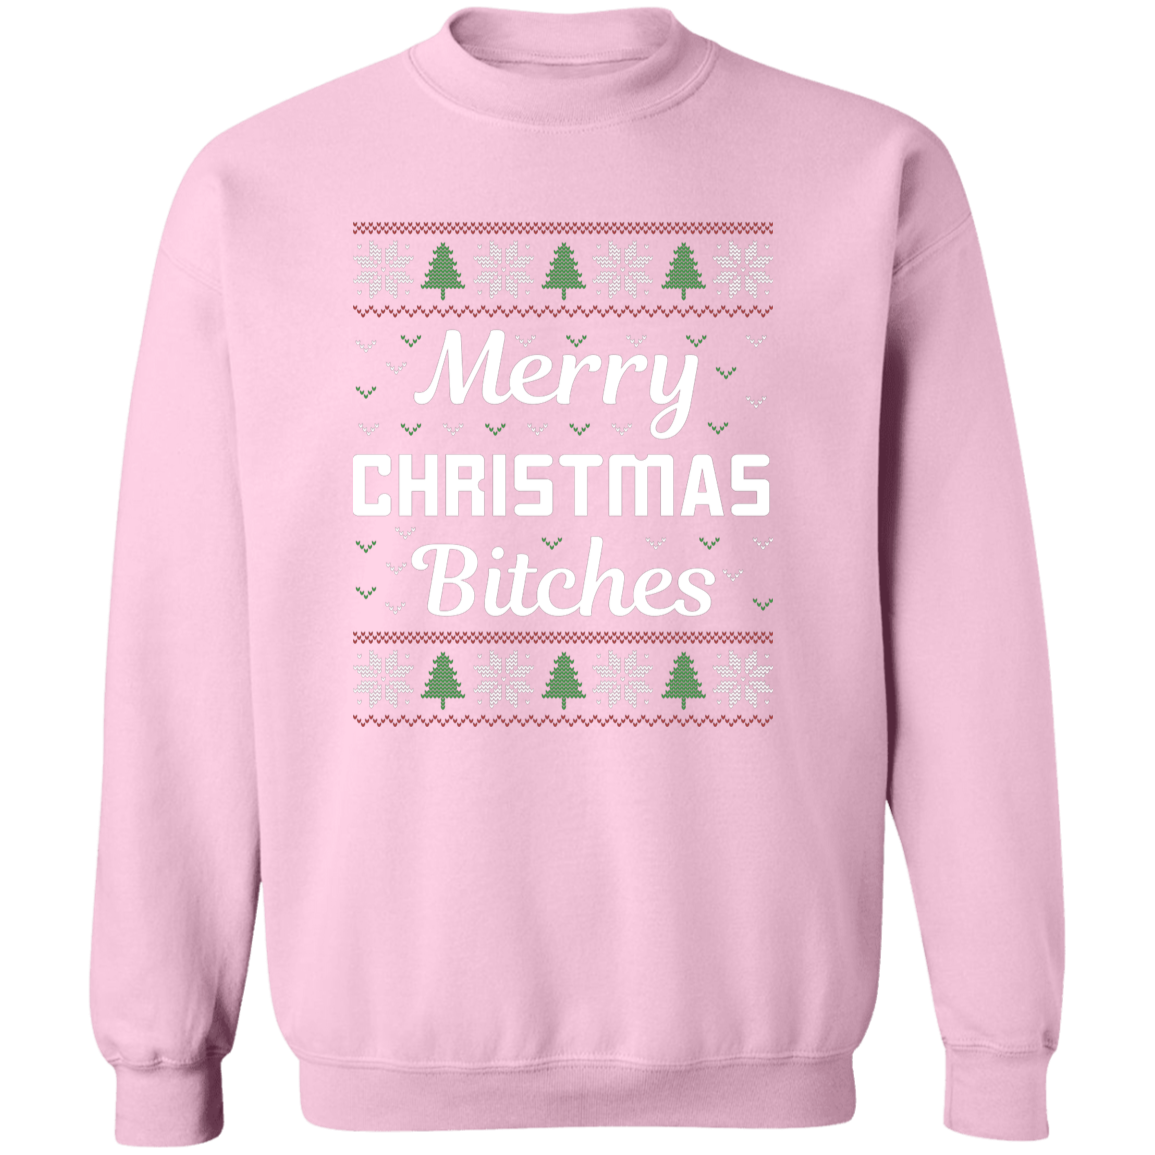 Merry Christmas Bitches Sweatshirt